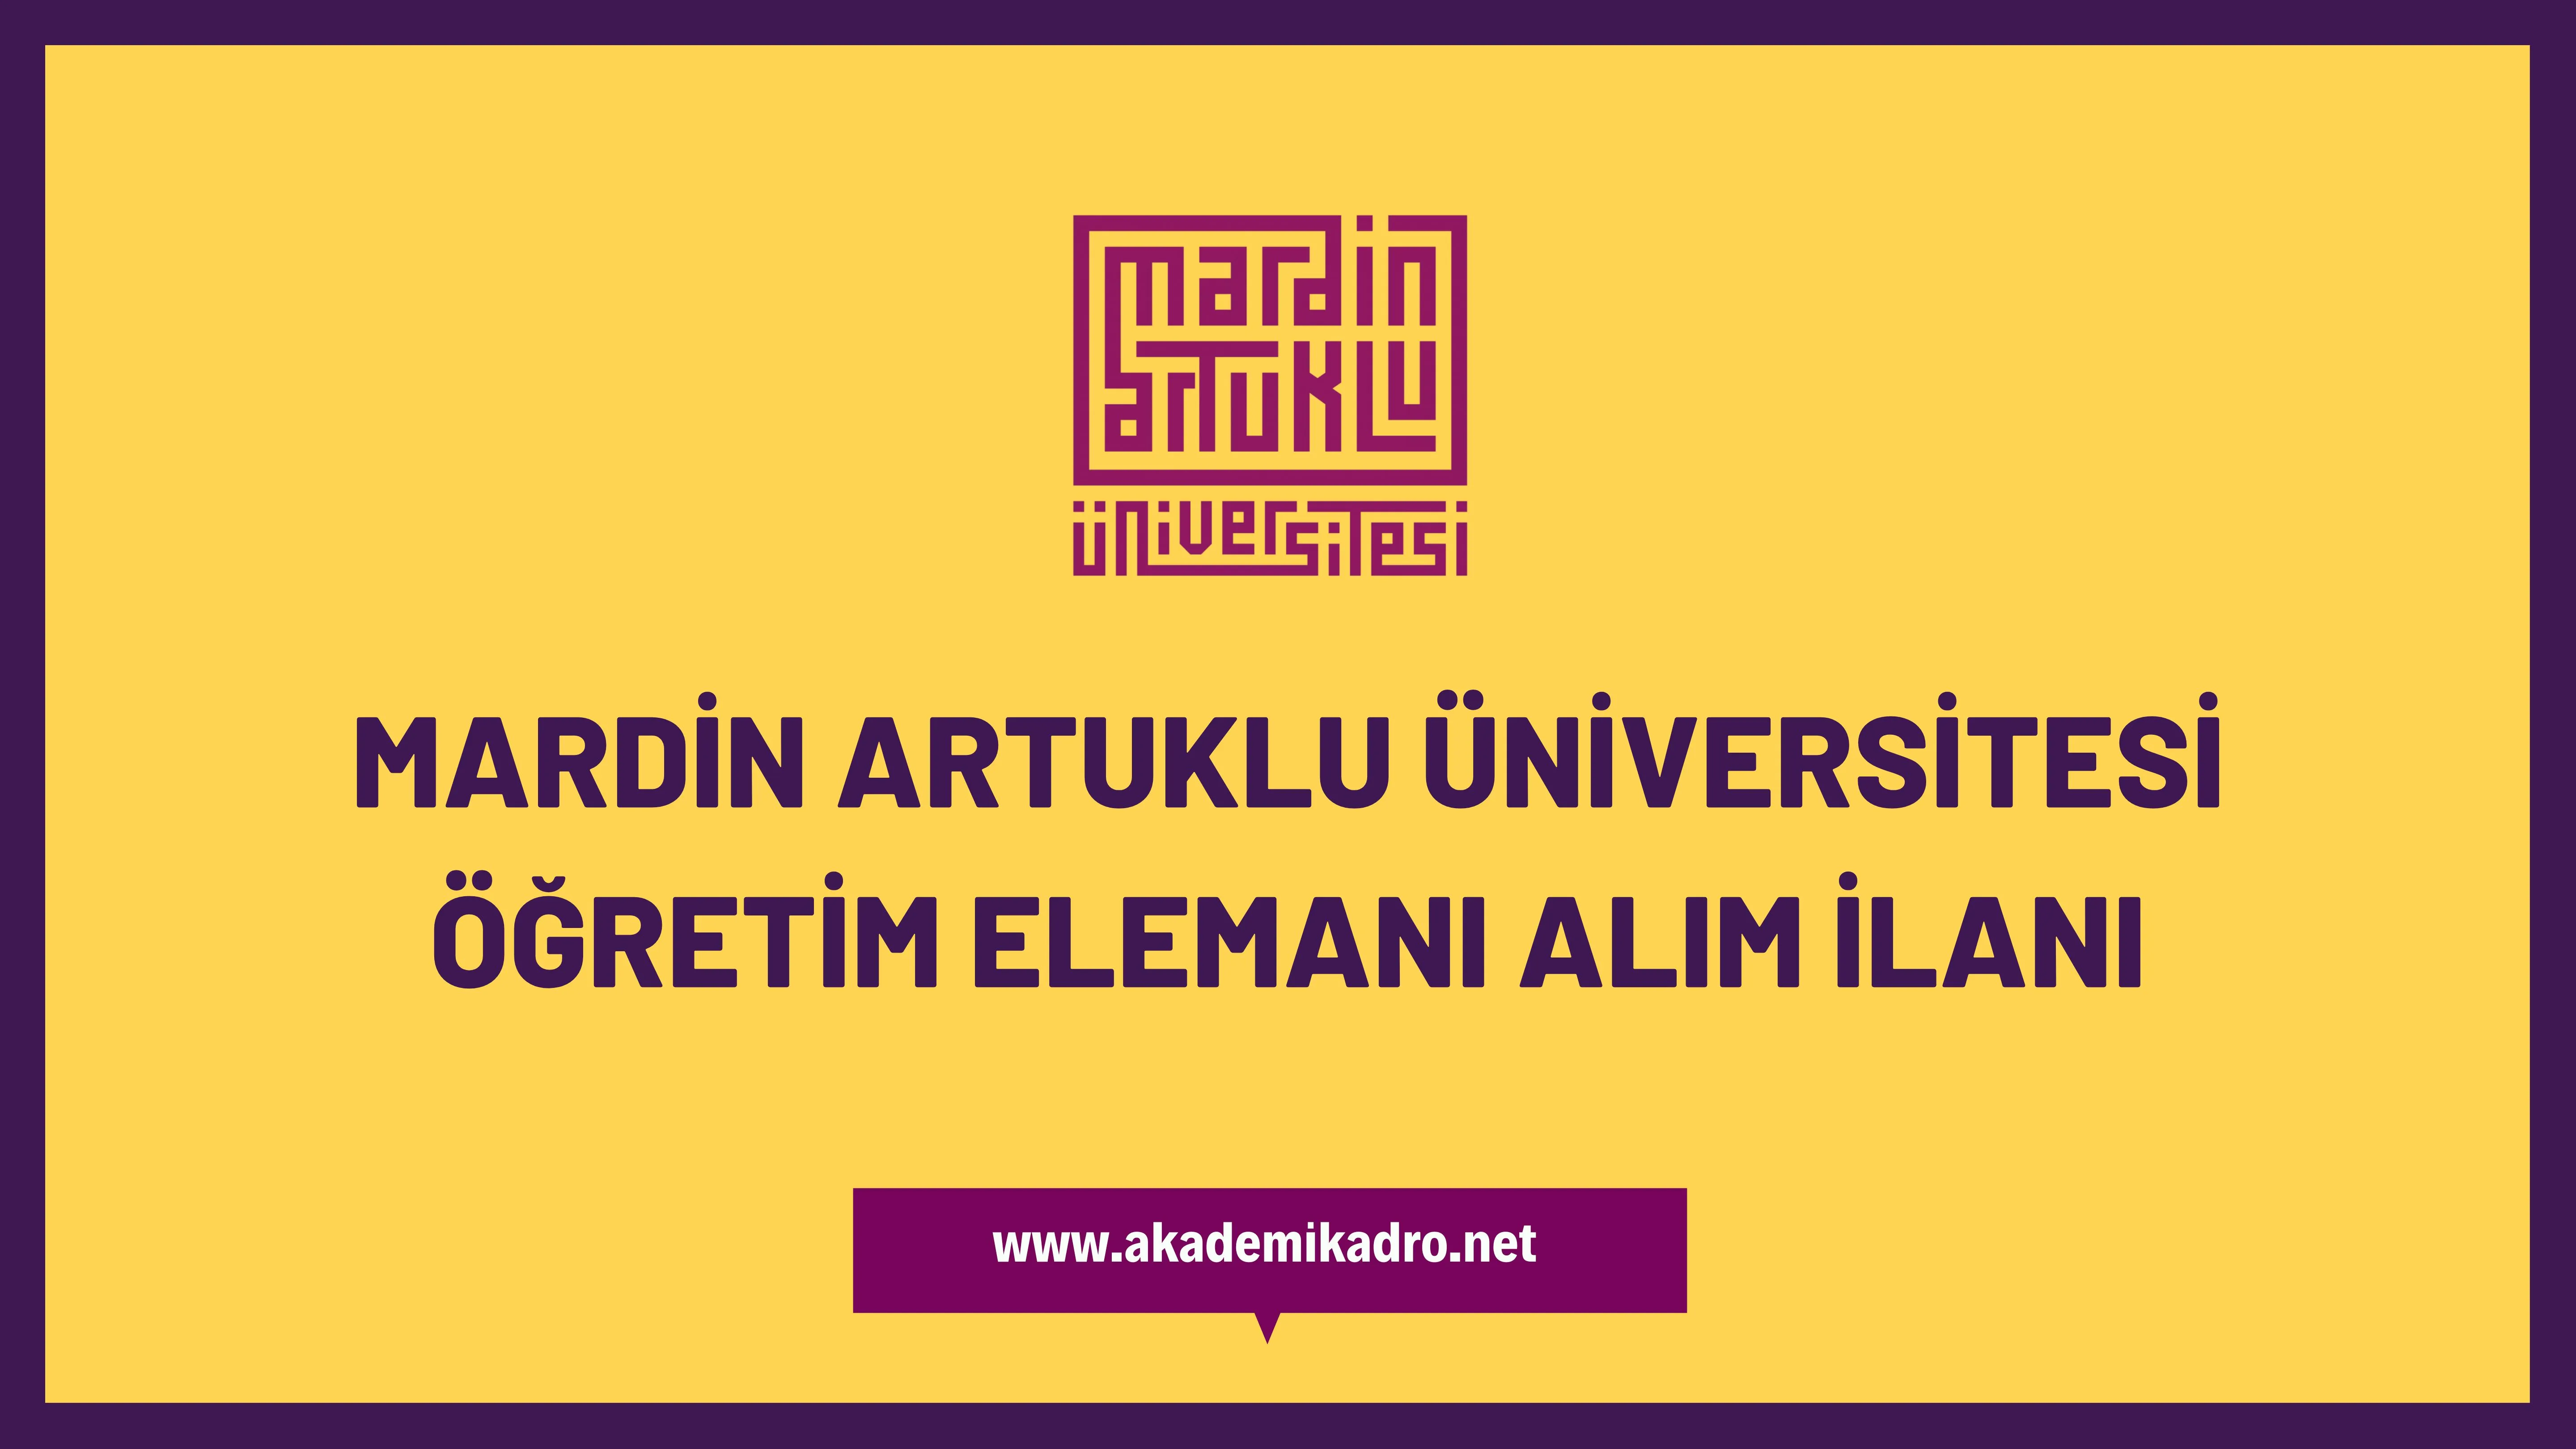 Mardin Artuklu Üniversitesi Öğretim görevlisi, 2 Araştırma görevlisi ve 13 öğretim üyesi alacak.